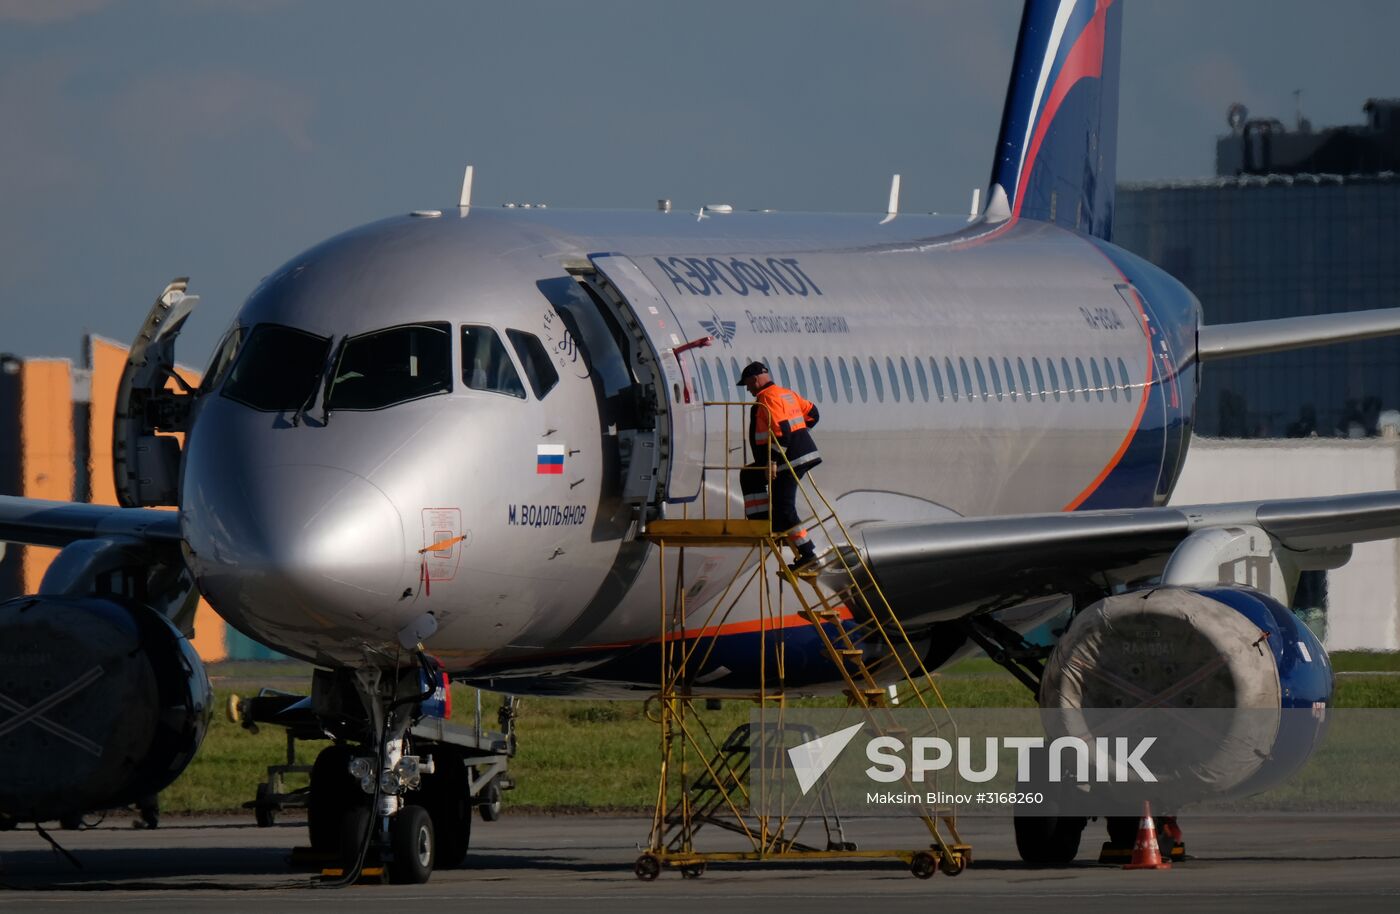 Aircraft at Sheremetyevo Airport